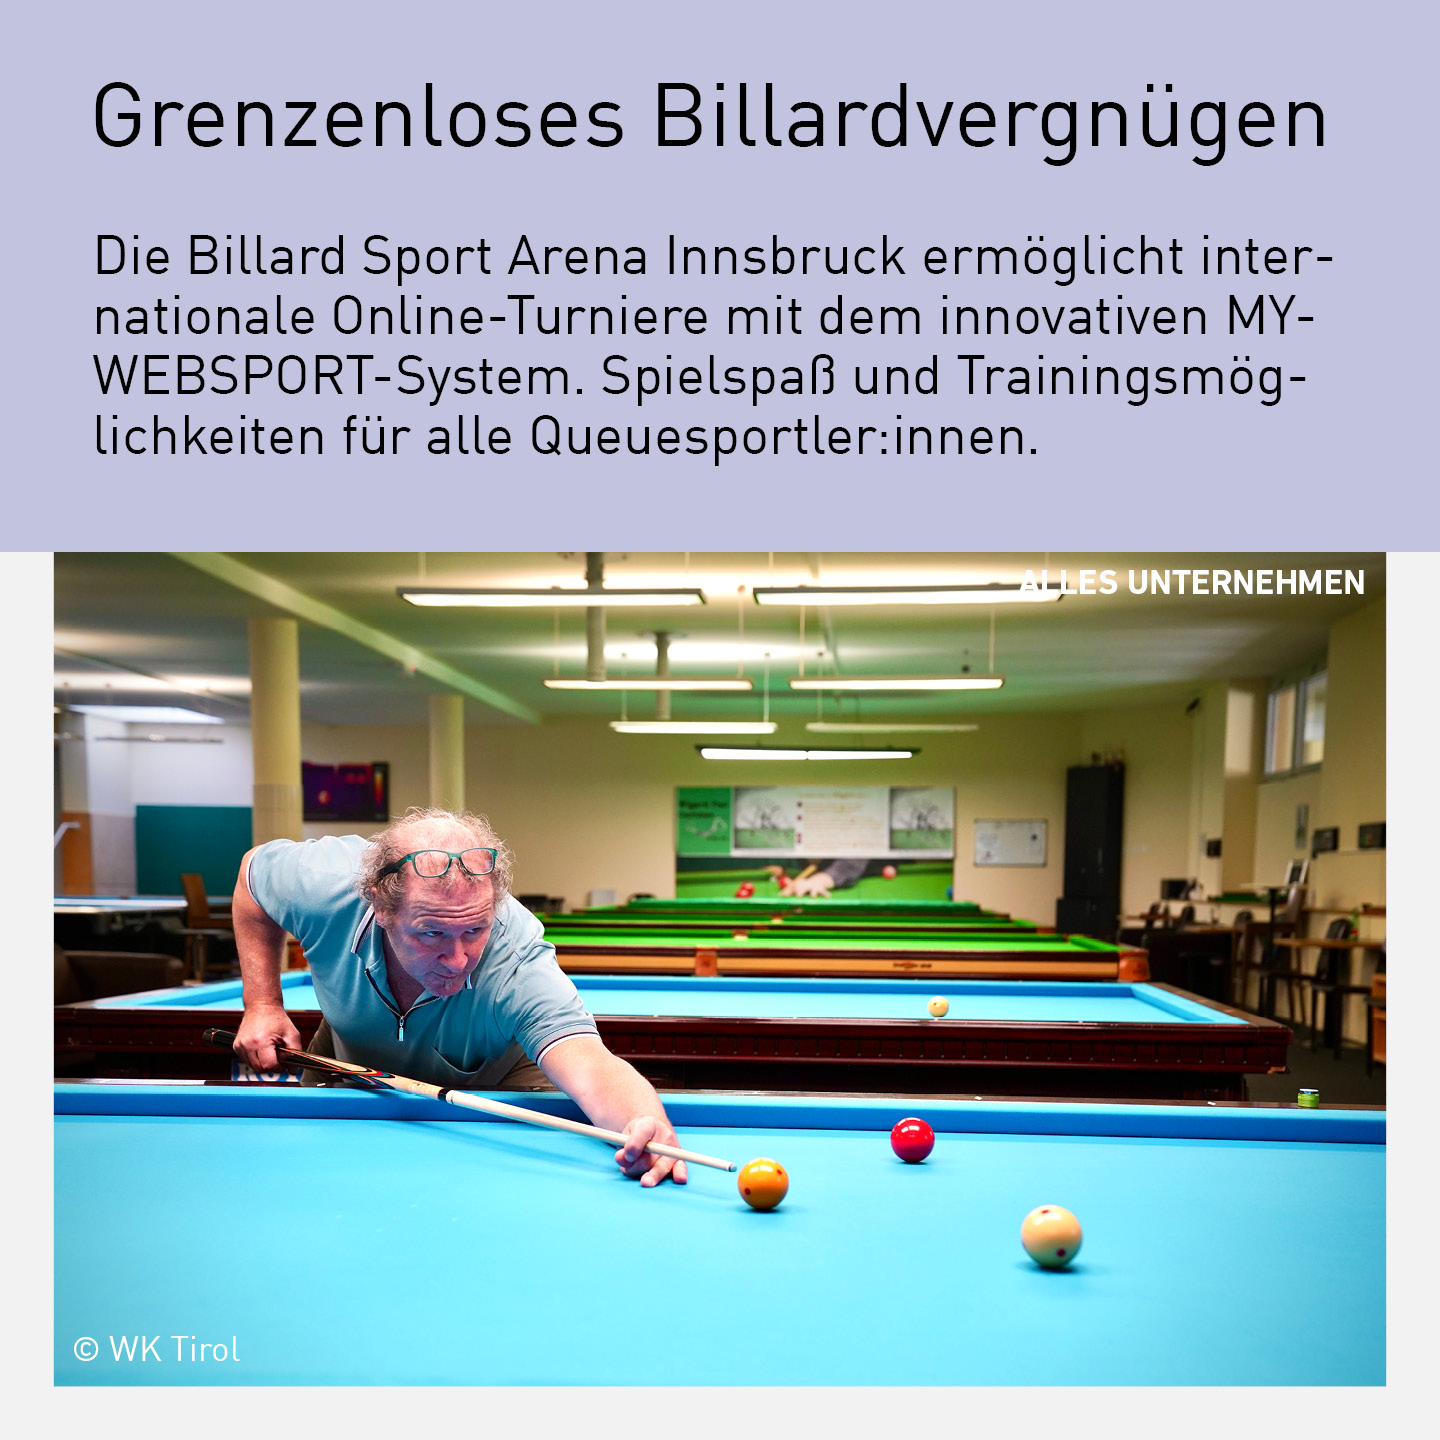 Ein Mann spielt Billard in der Billard Sport Arena Innsbruck, die internationale Online-Turniere mit dem MYWEBSPORT-System ermöglicht.